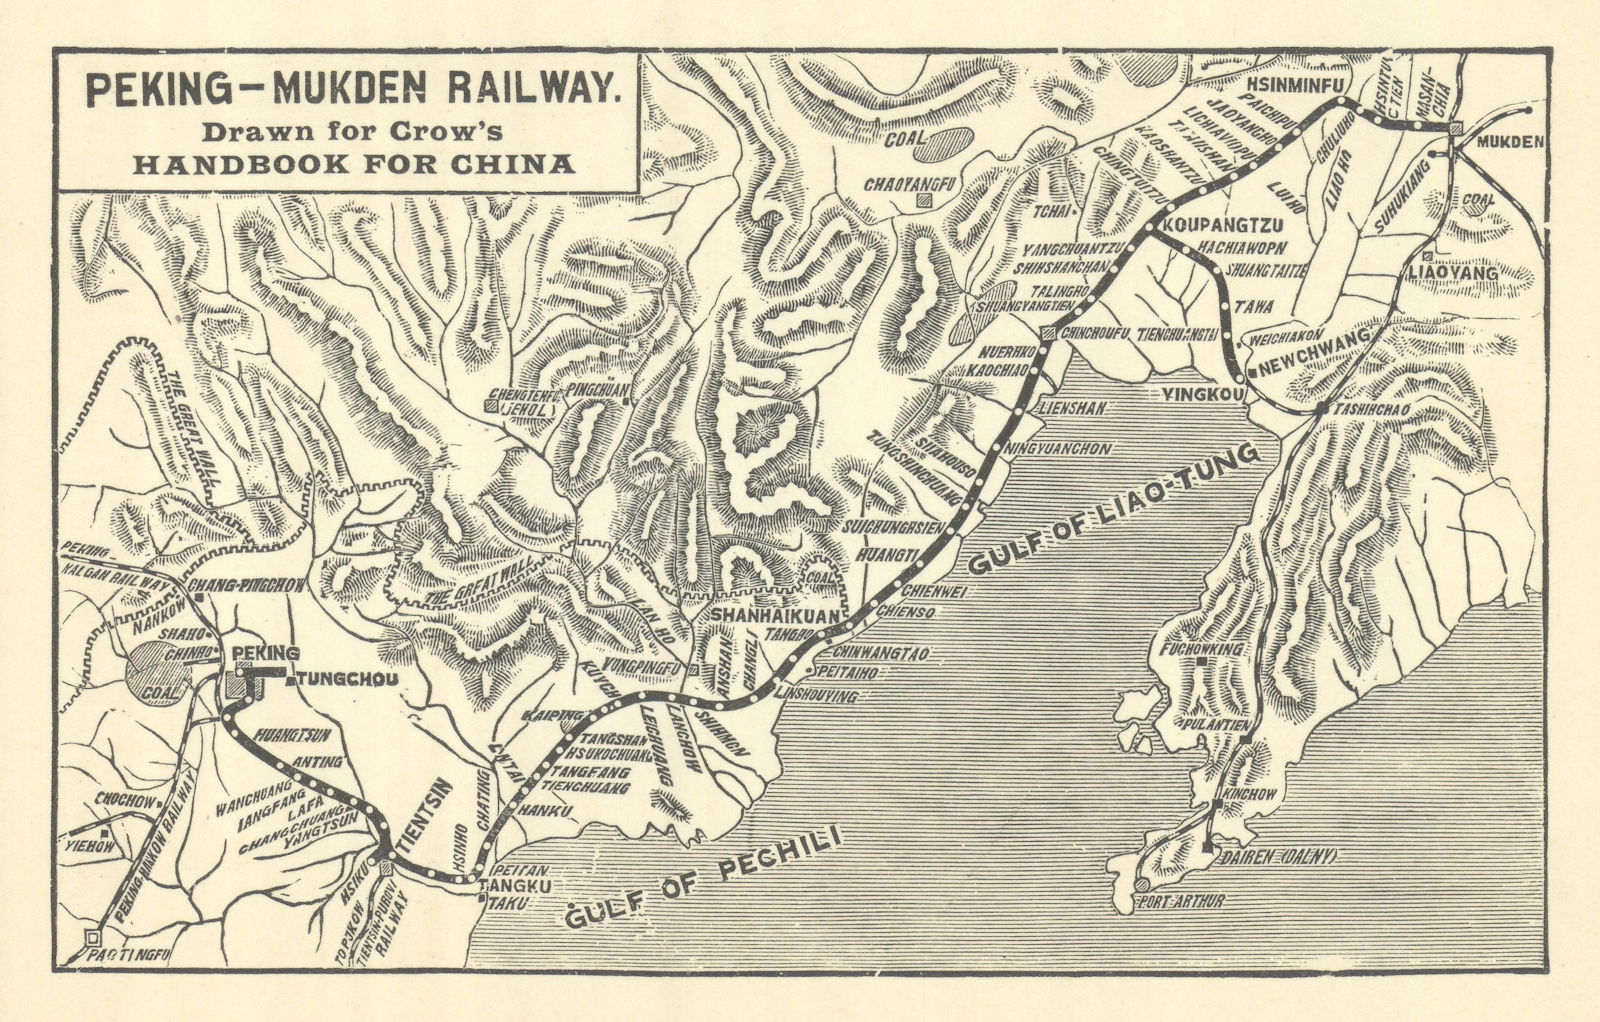 Peking - Mukden Railway (Beijing-Shenyang) by Carl Crow 1921 old antique map